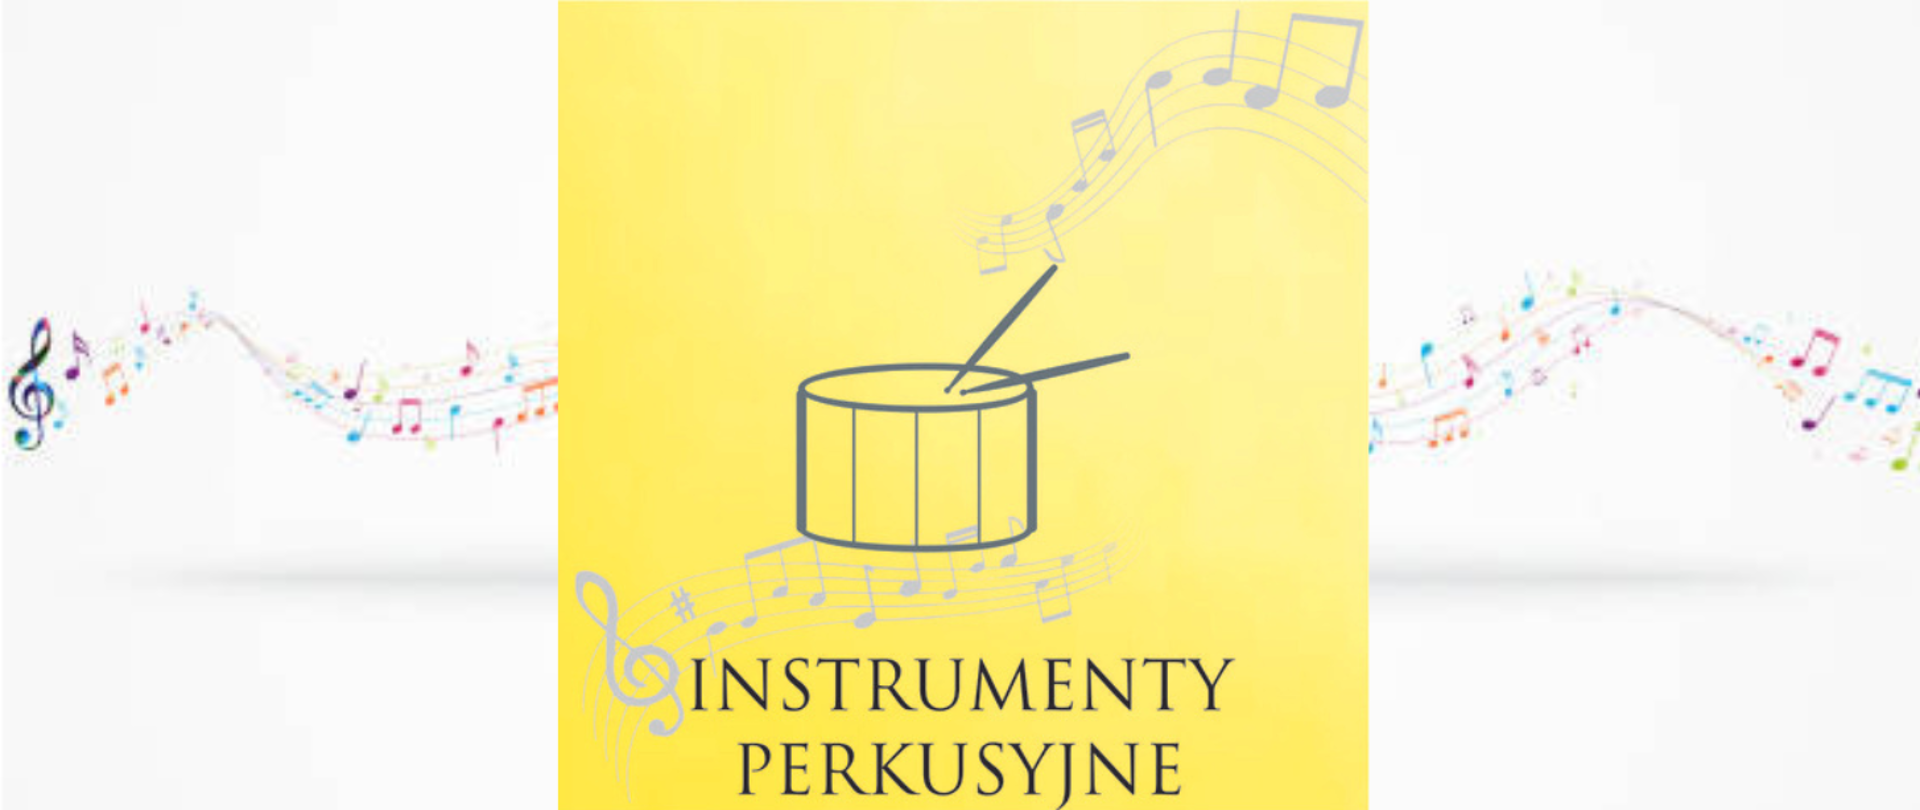 grafika przedstawiająca bębenek z pałeczkami na tle nut , pod grafiką instrumentu napis instrumenty perkusyjne